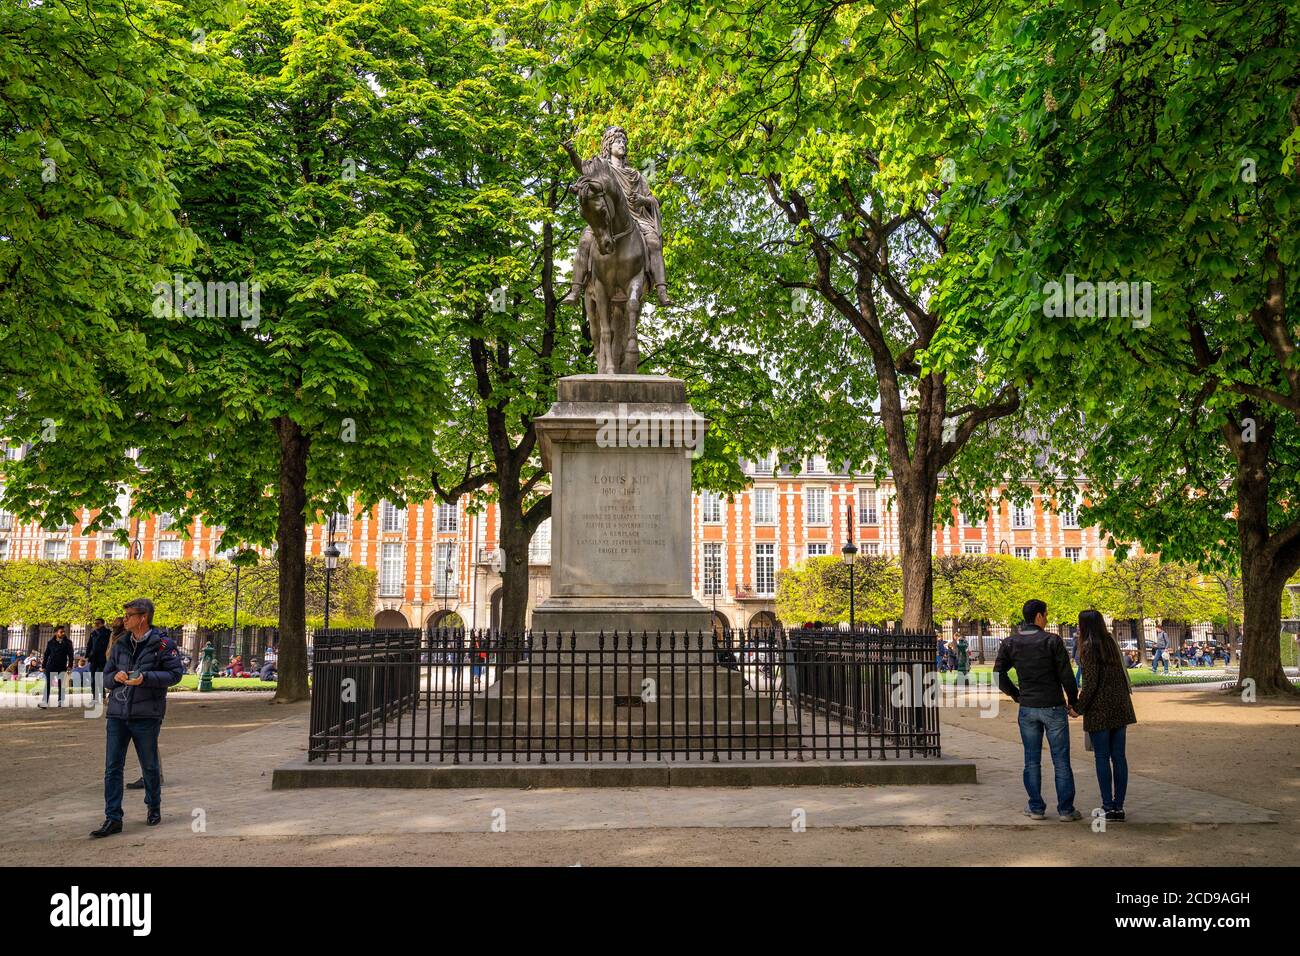 France, Paris, the port of the Arsenal, France, Paris, Place des Vosges, statue of Louis XIII Stock Photo